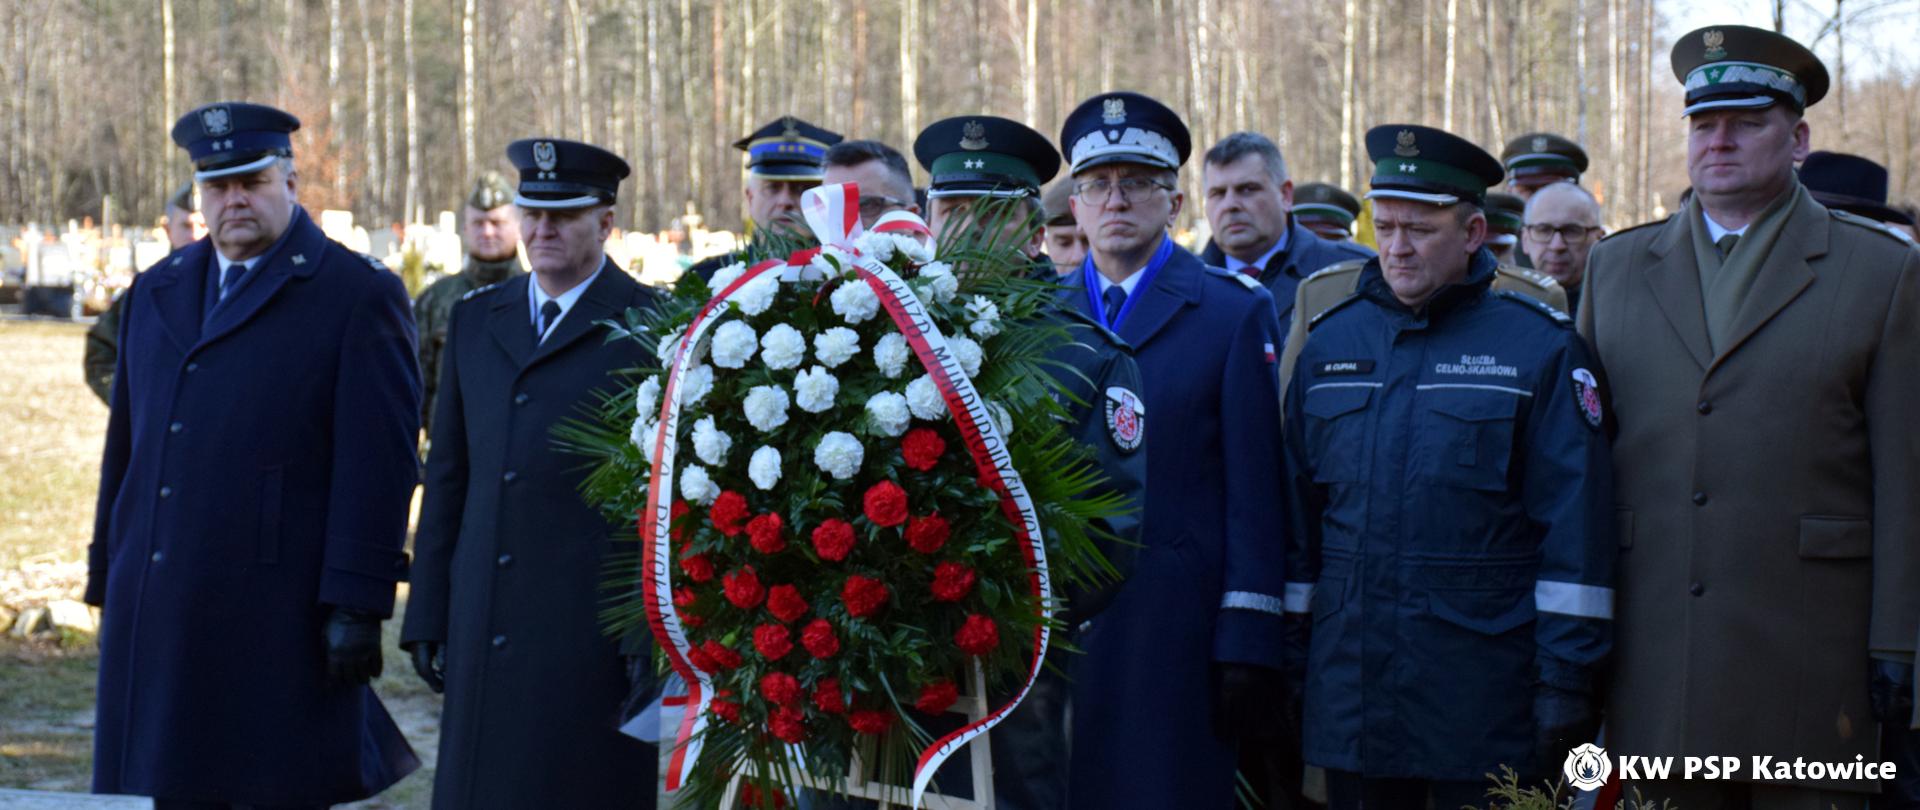 Na cmentarzu murckowskim w Katowicach, w szeregu stoją w mundurach szefowie służb mundurowych. Przed nimi na stojaku wieniec z biało-czerwonych kwiatów. 